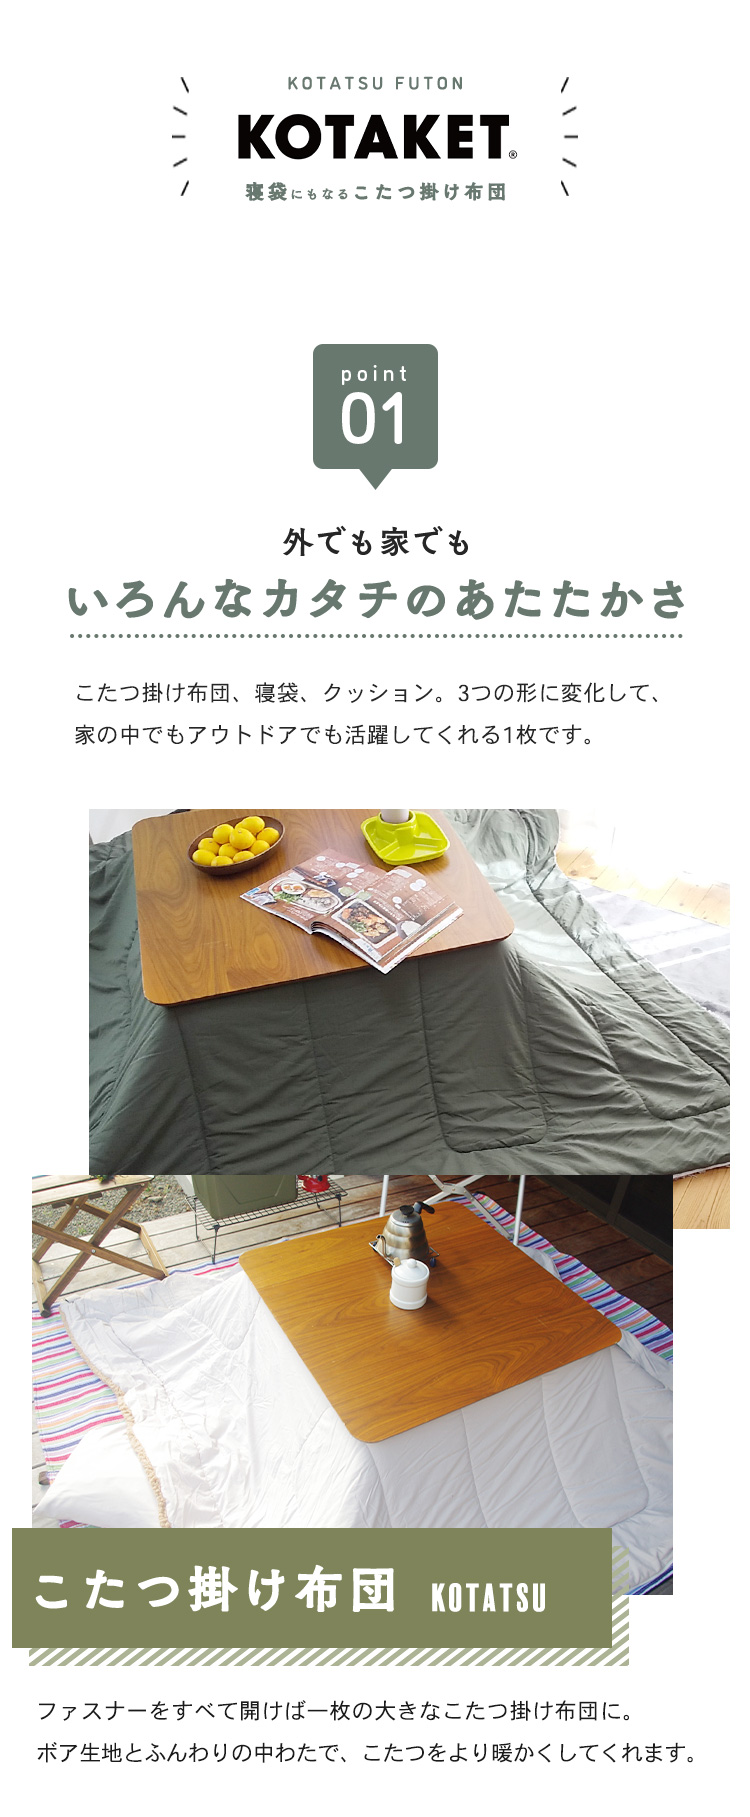  спальный мешок котацу ватное одеяло прямоугольный 190×240cm 105 для 120 для подушка спальный мешок предотвращение бедствий . покупатель срочный кемпинг боа одноцветный хаки серый котацу futon котацу ..